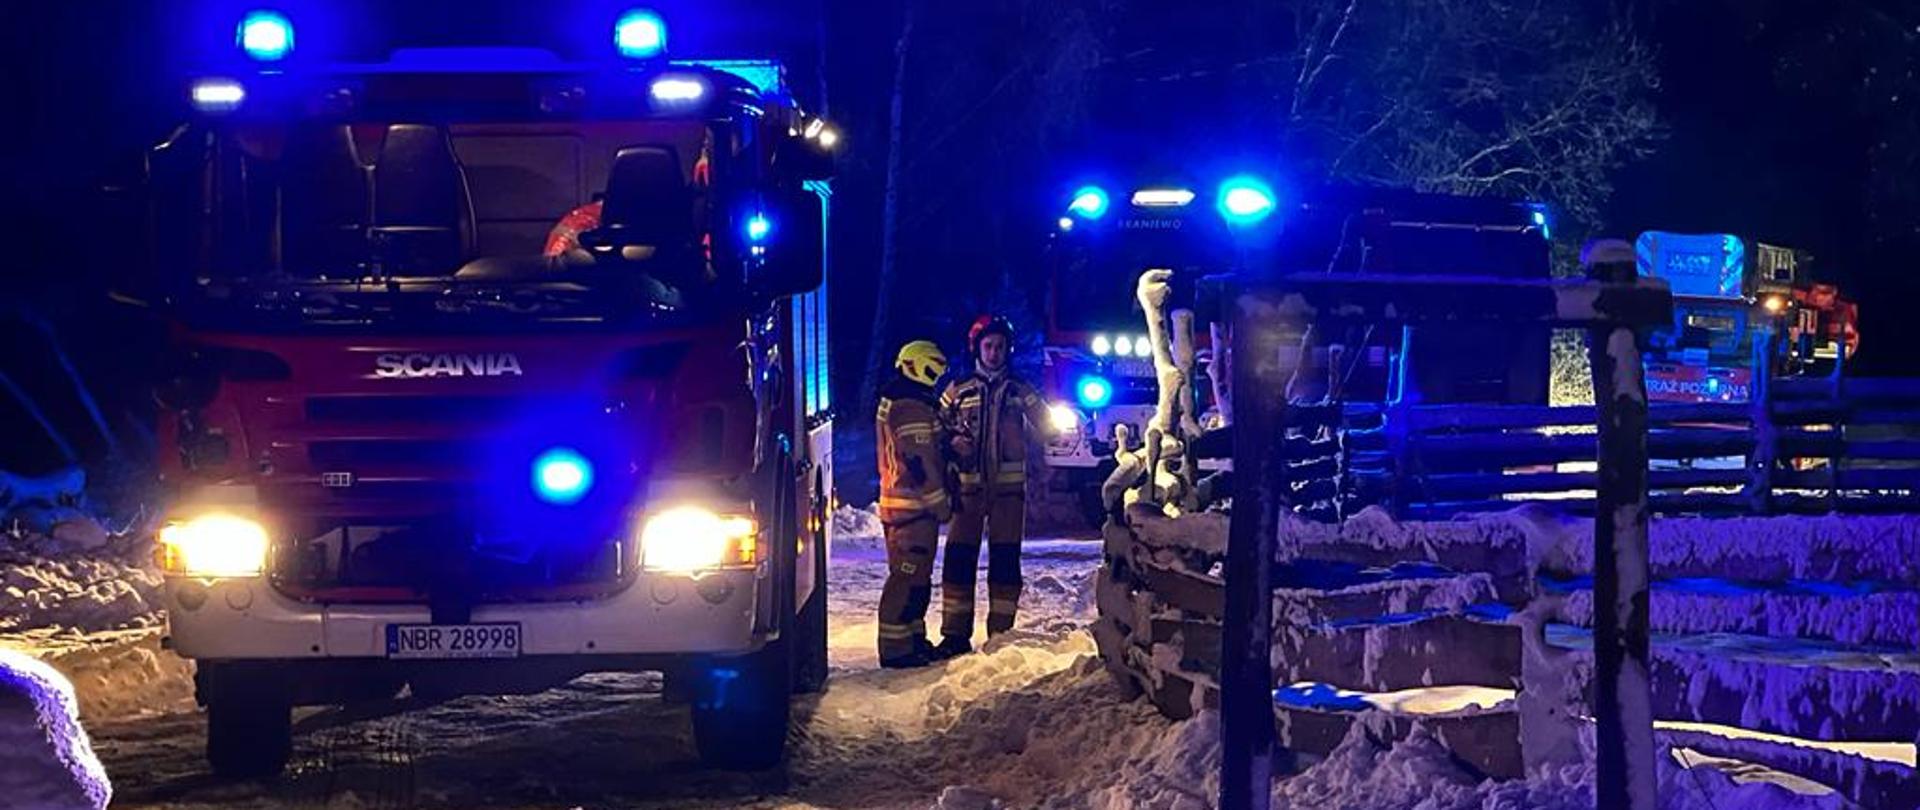 Zdjęcie zrobione nocą. Na na zaśnieżonej drodze stoją trzy samochody strażackie na światłach i maja włączone niebieskie świtała ostrzegawcze. Przy pierwszym samochodzie stoi dwóch strażaków.